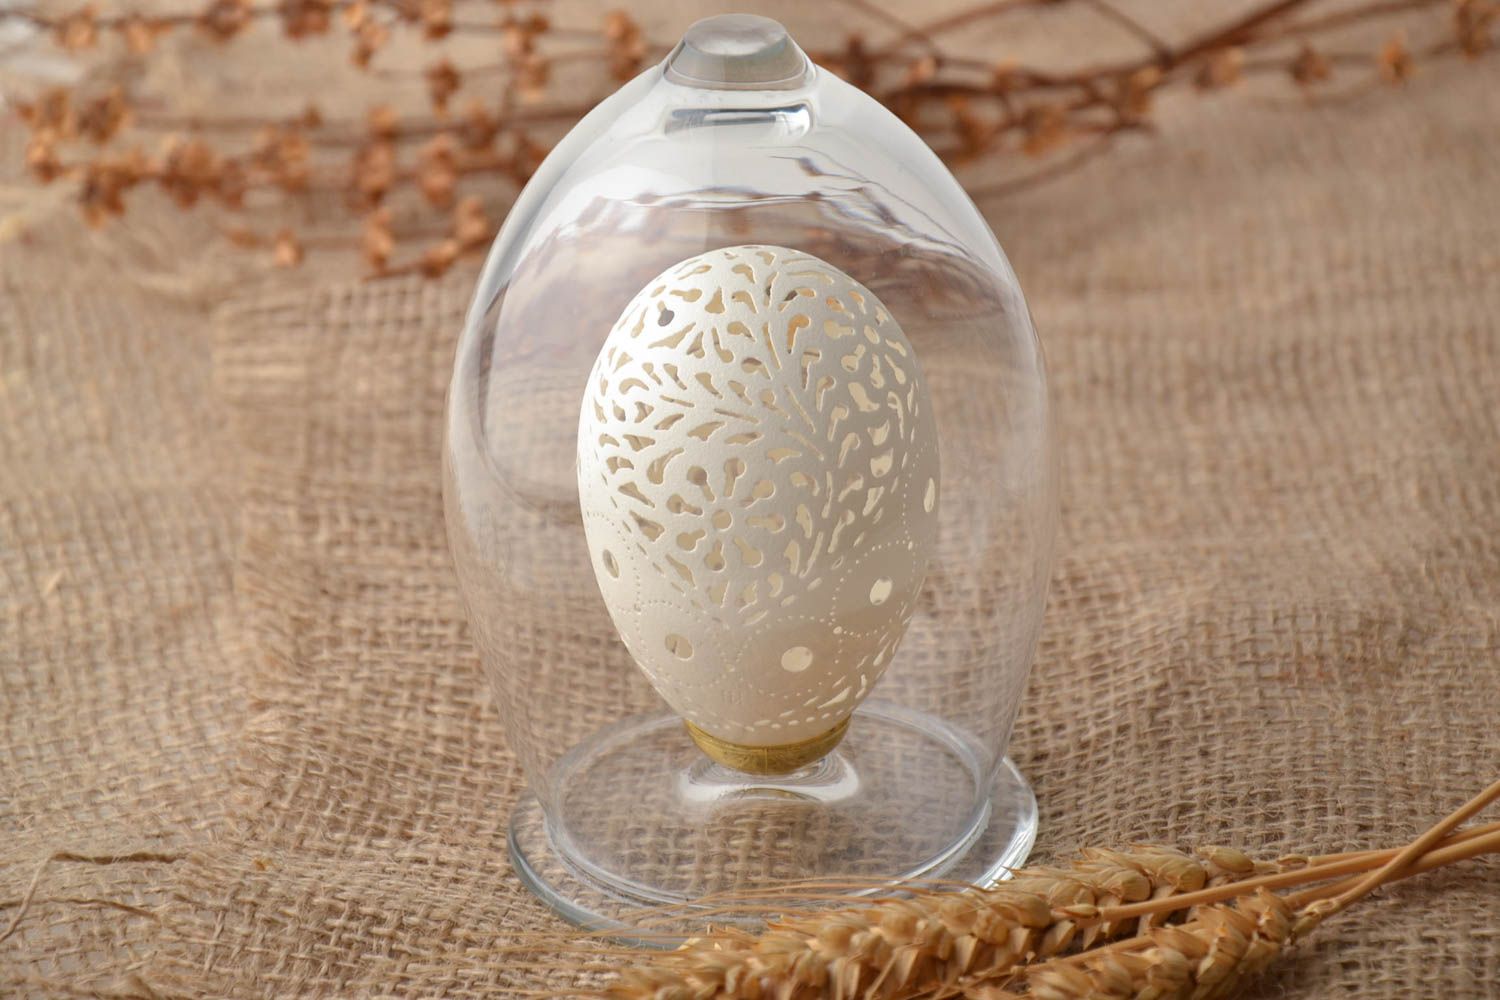 Гусиное яйцо с гравировкой растительные мотивы фото 1